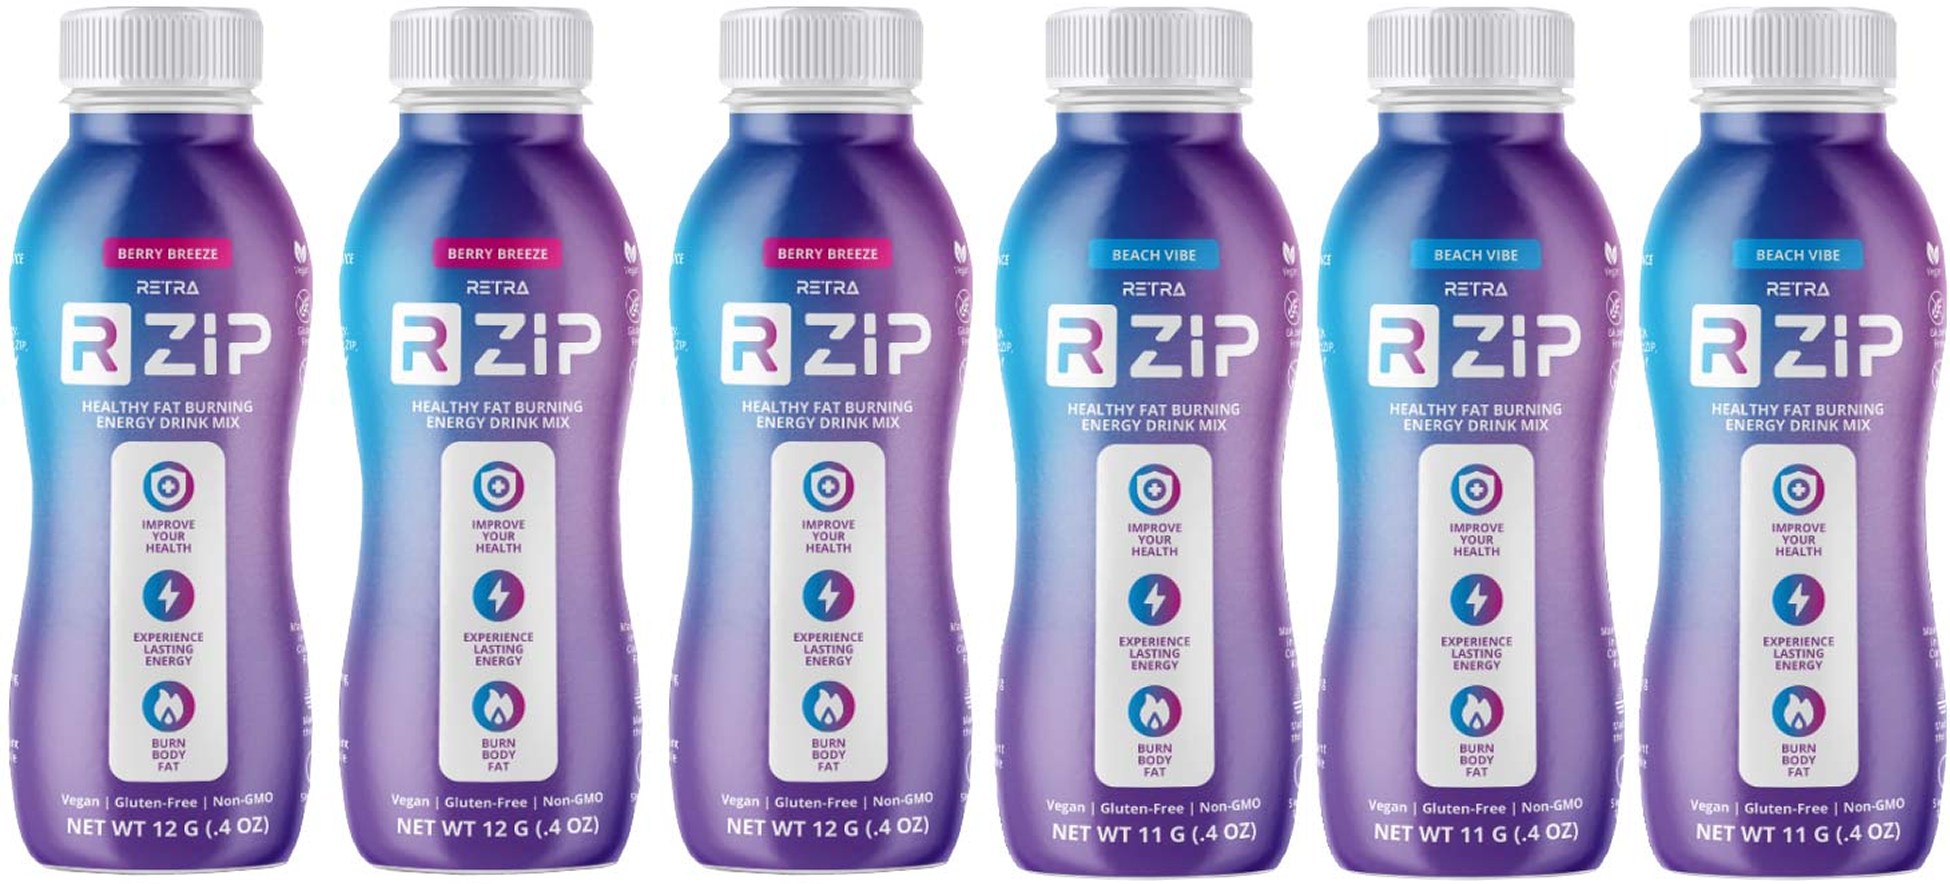 Get R:ZIP sample trial 6-pack